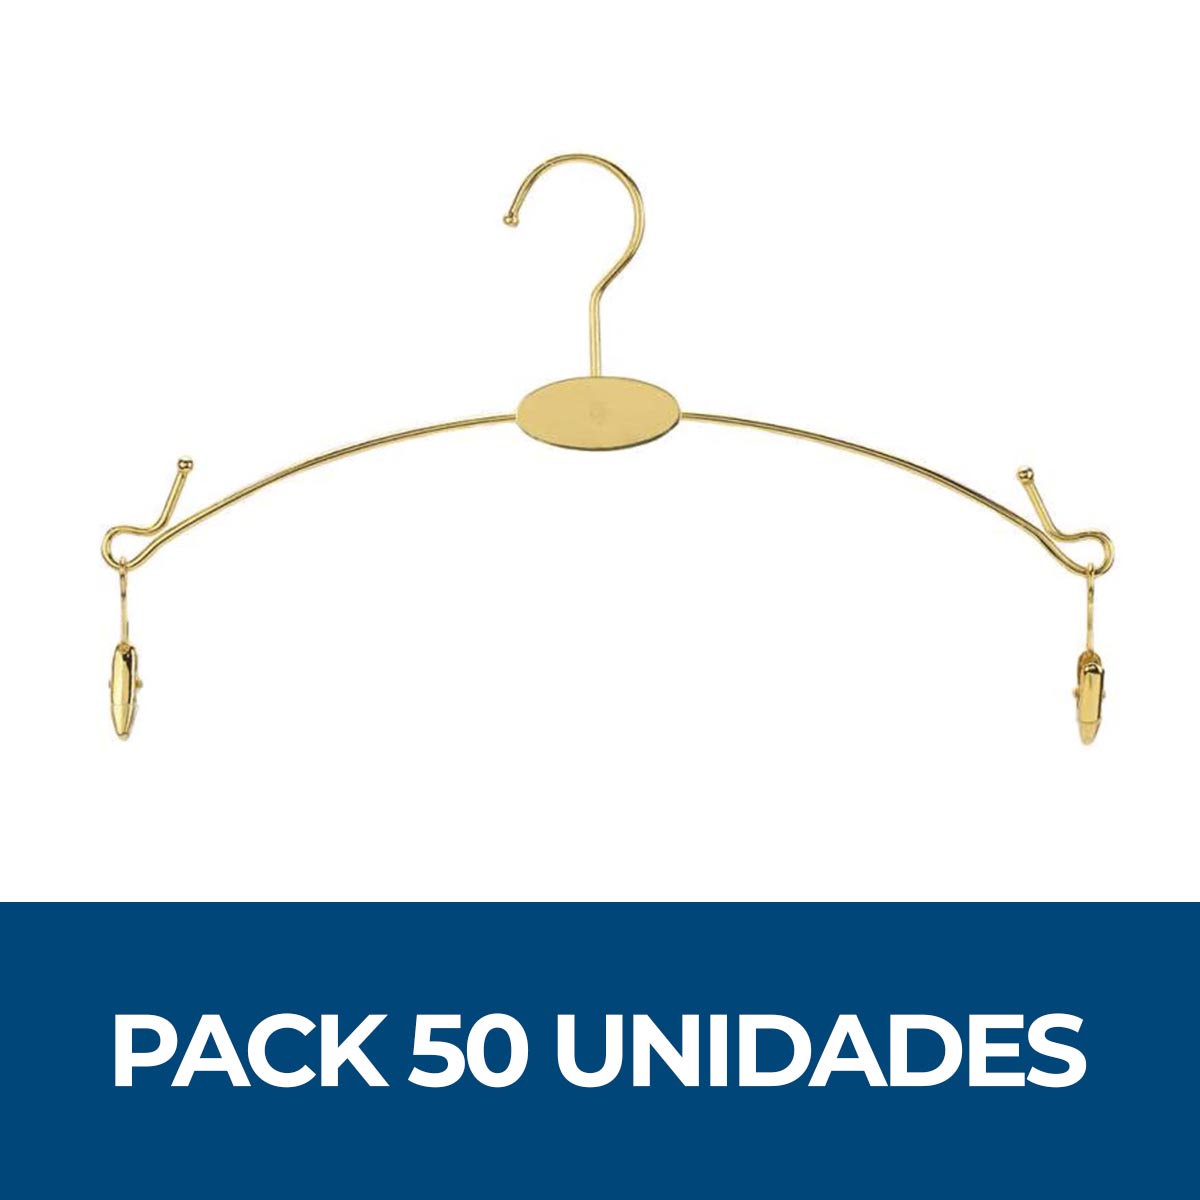 Pack 50 Colgadores metálico dorado para lenceria, interior con pinzas – EkipateShop